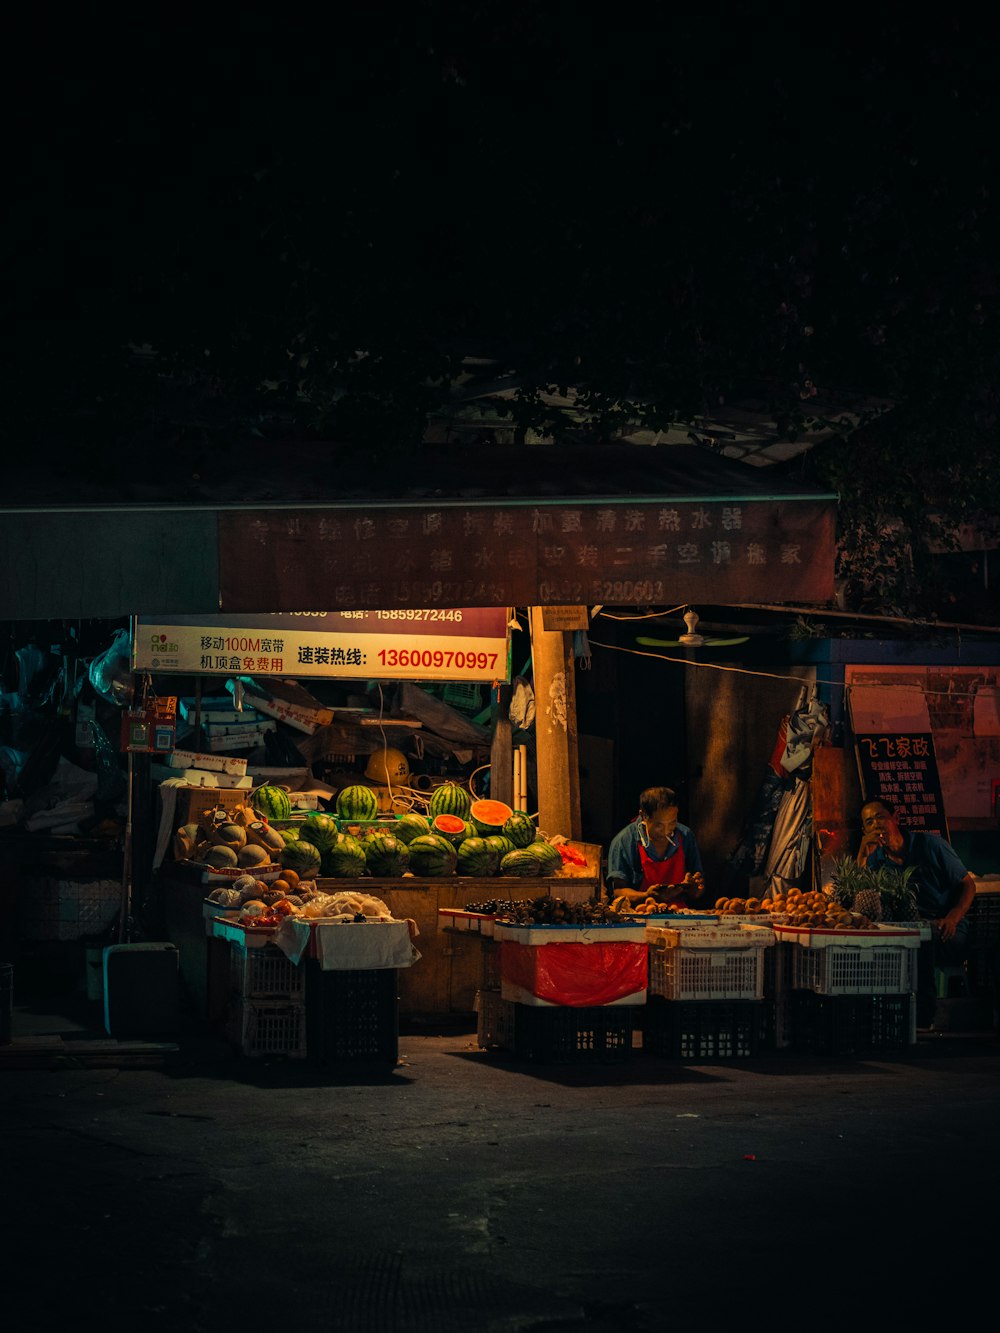 Puesto de frutas frente a la tienda durante la noche